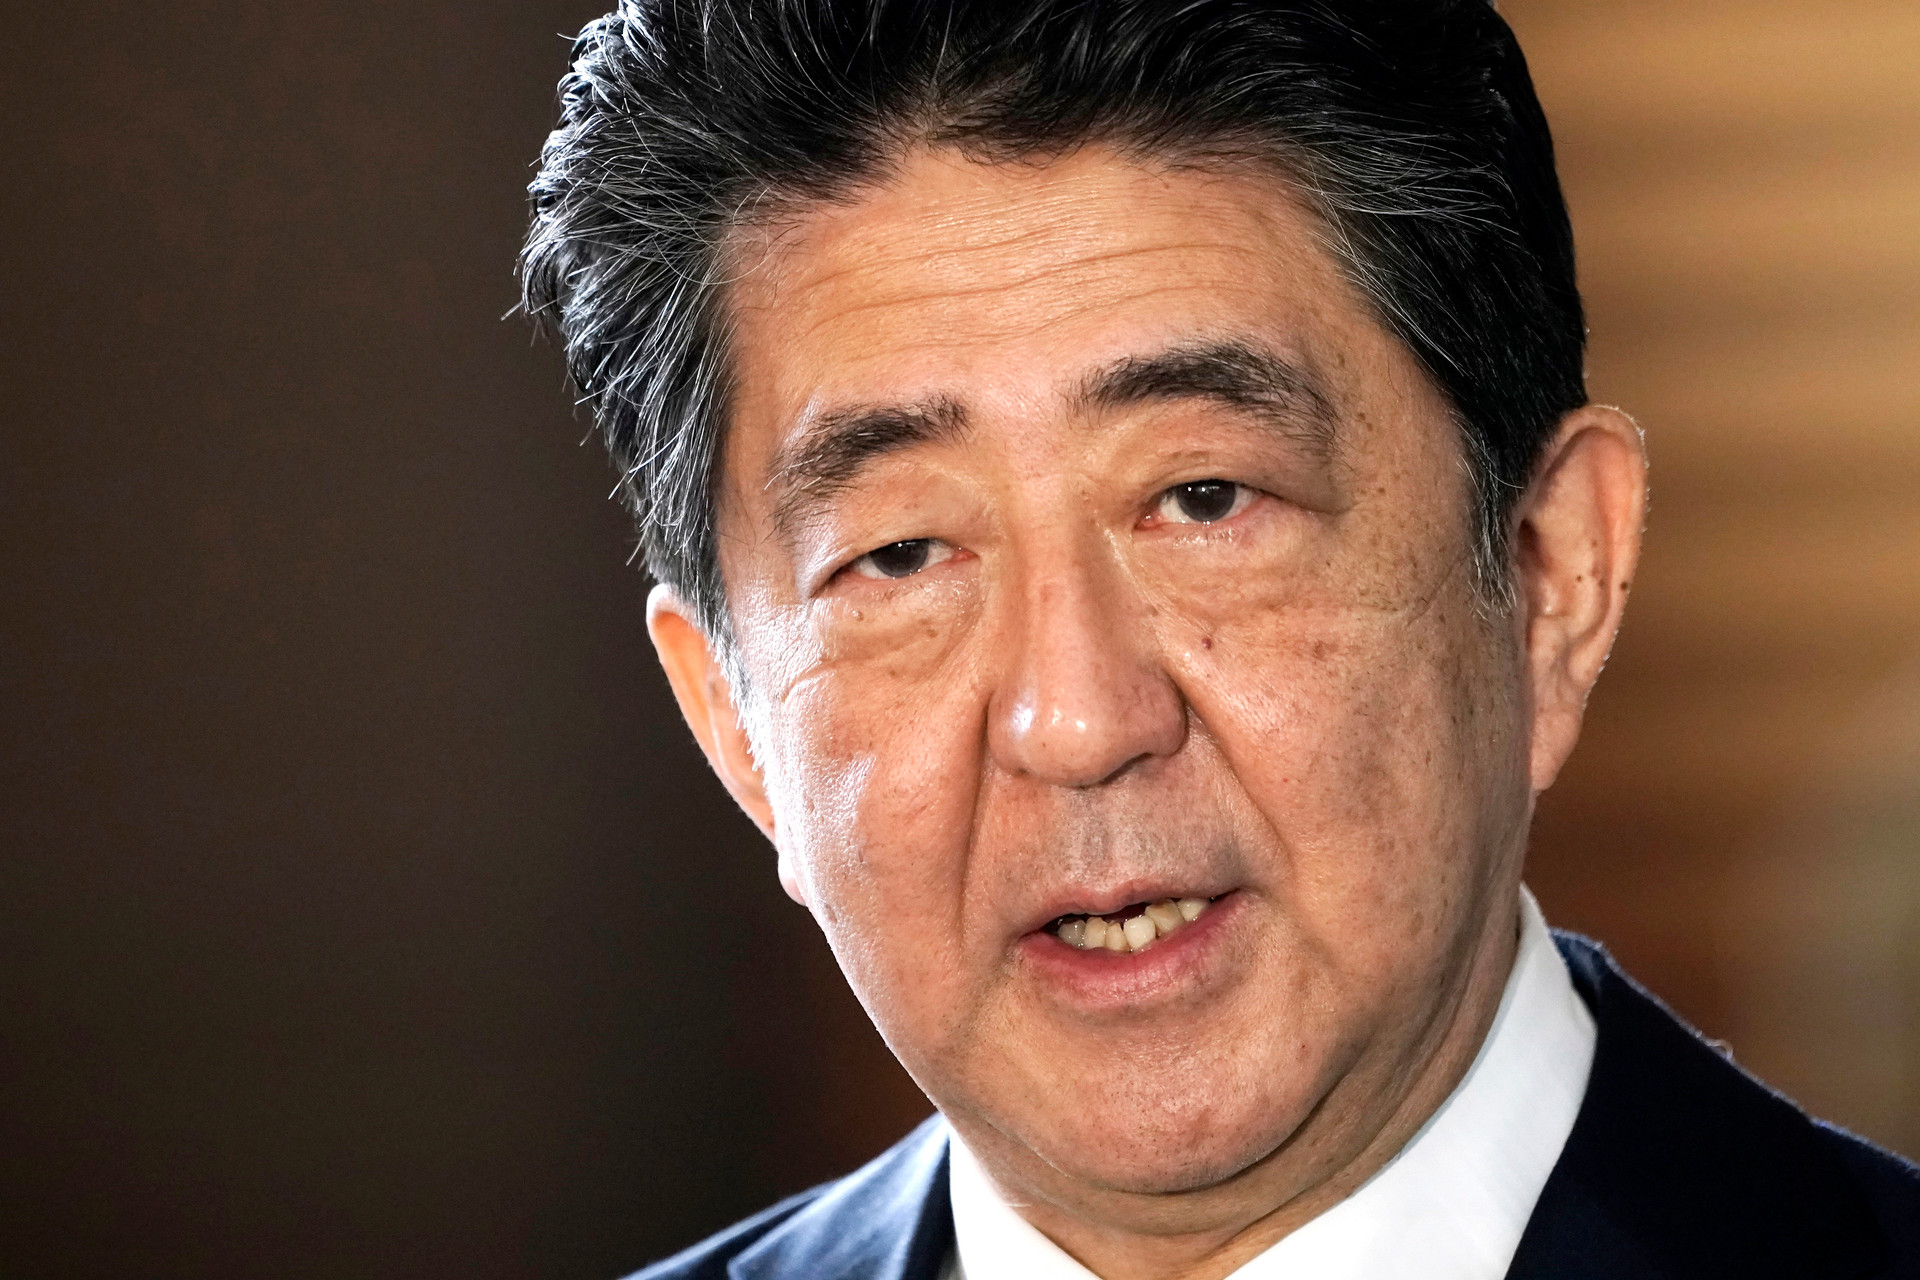 Cựu thủ tướng Abe Shinzo đã qua đời sau khi bị bắn - Ảnh 1.